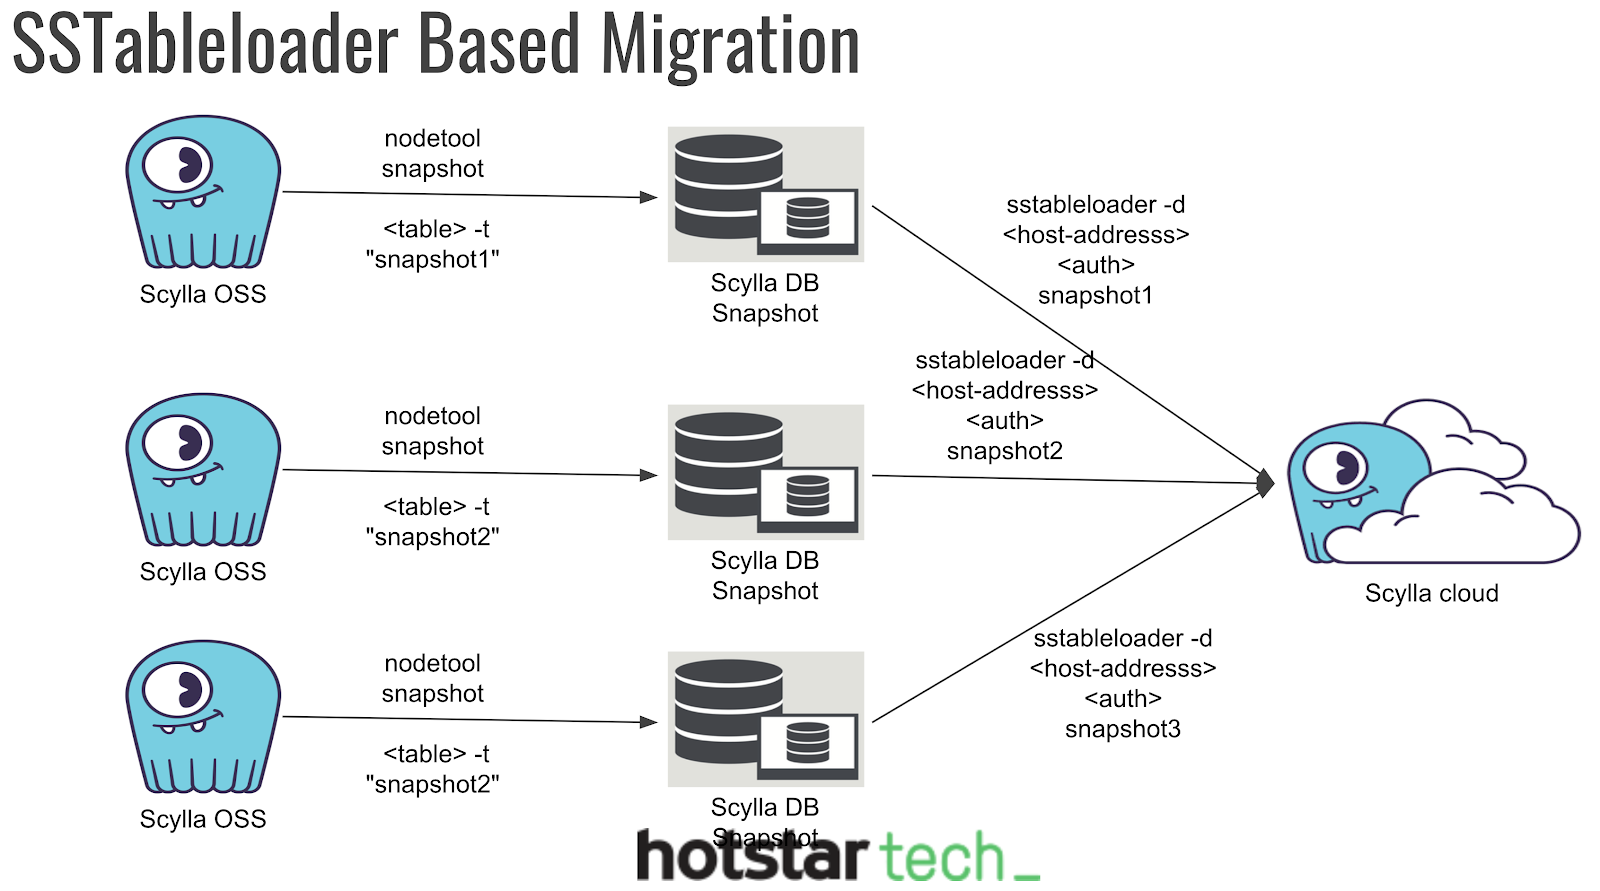 Hvordan bruker Hotstar Big Data?